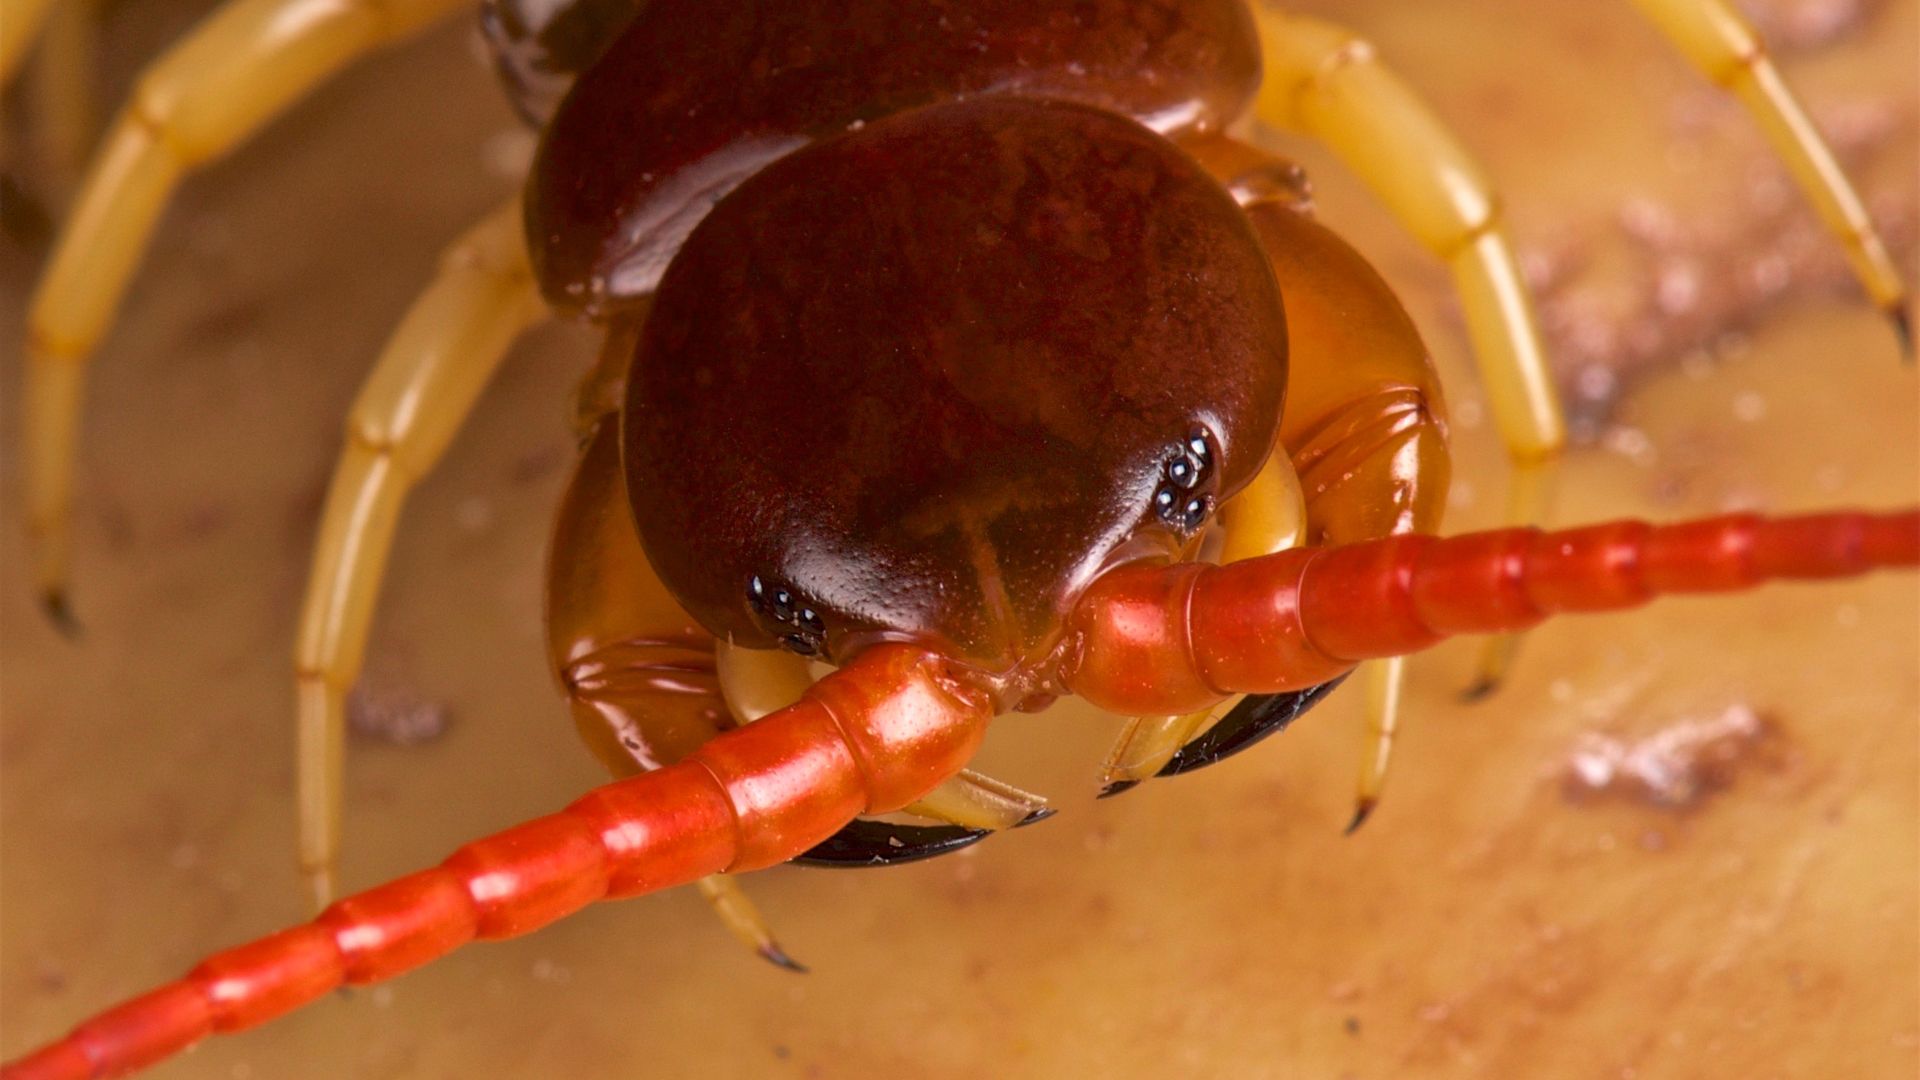 Venomous centipede could treat kidney disease [Video]